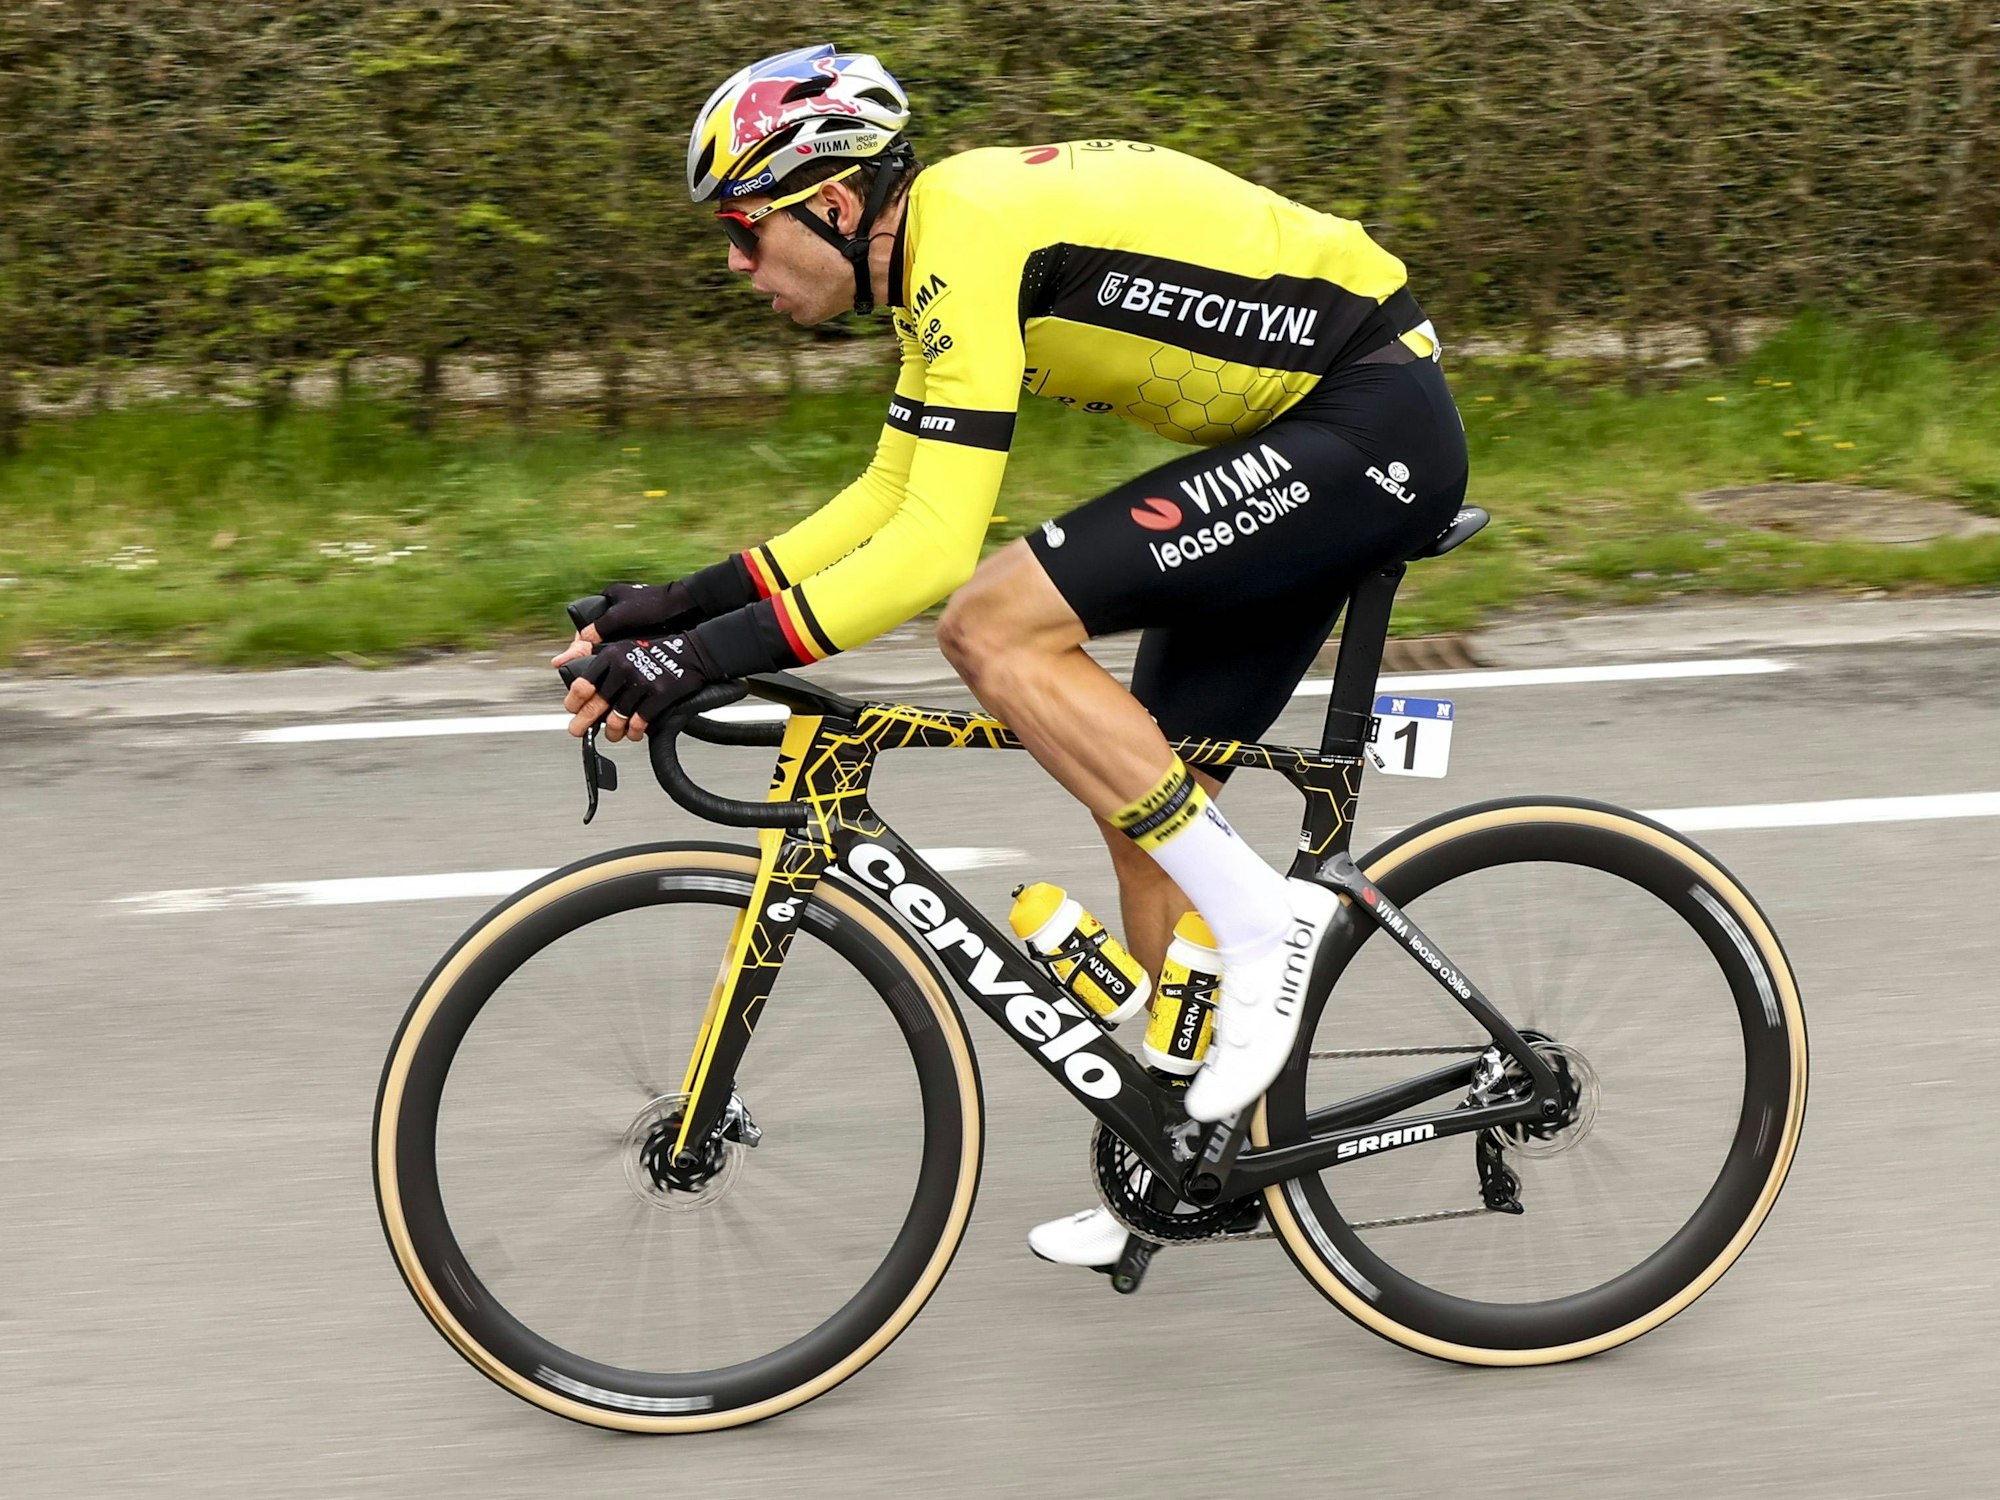 Der belgische Radfahrer Wout van Aert auf seinem Rad während des Rennens Quer durch Flandern.